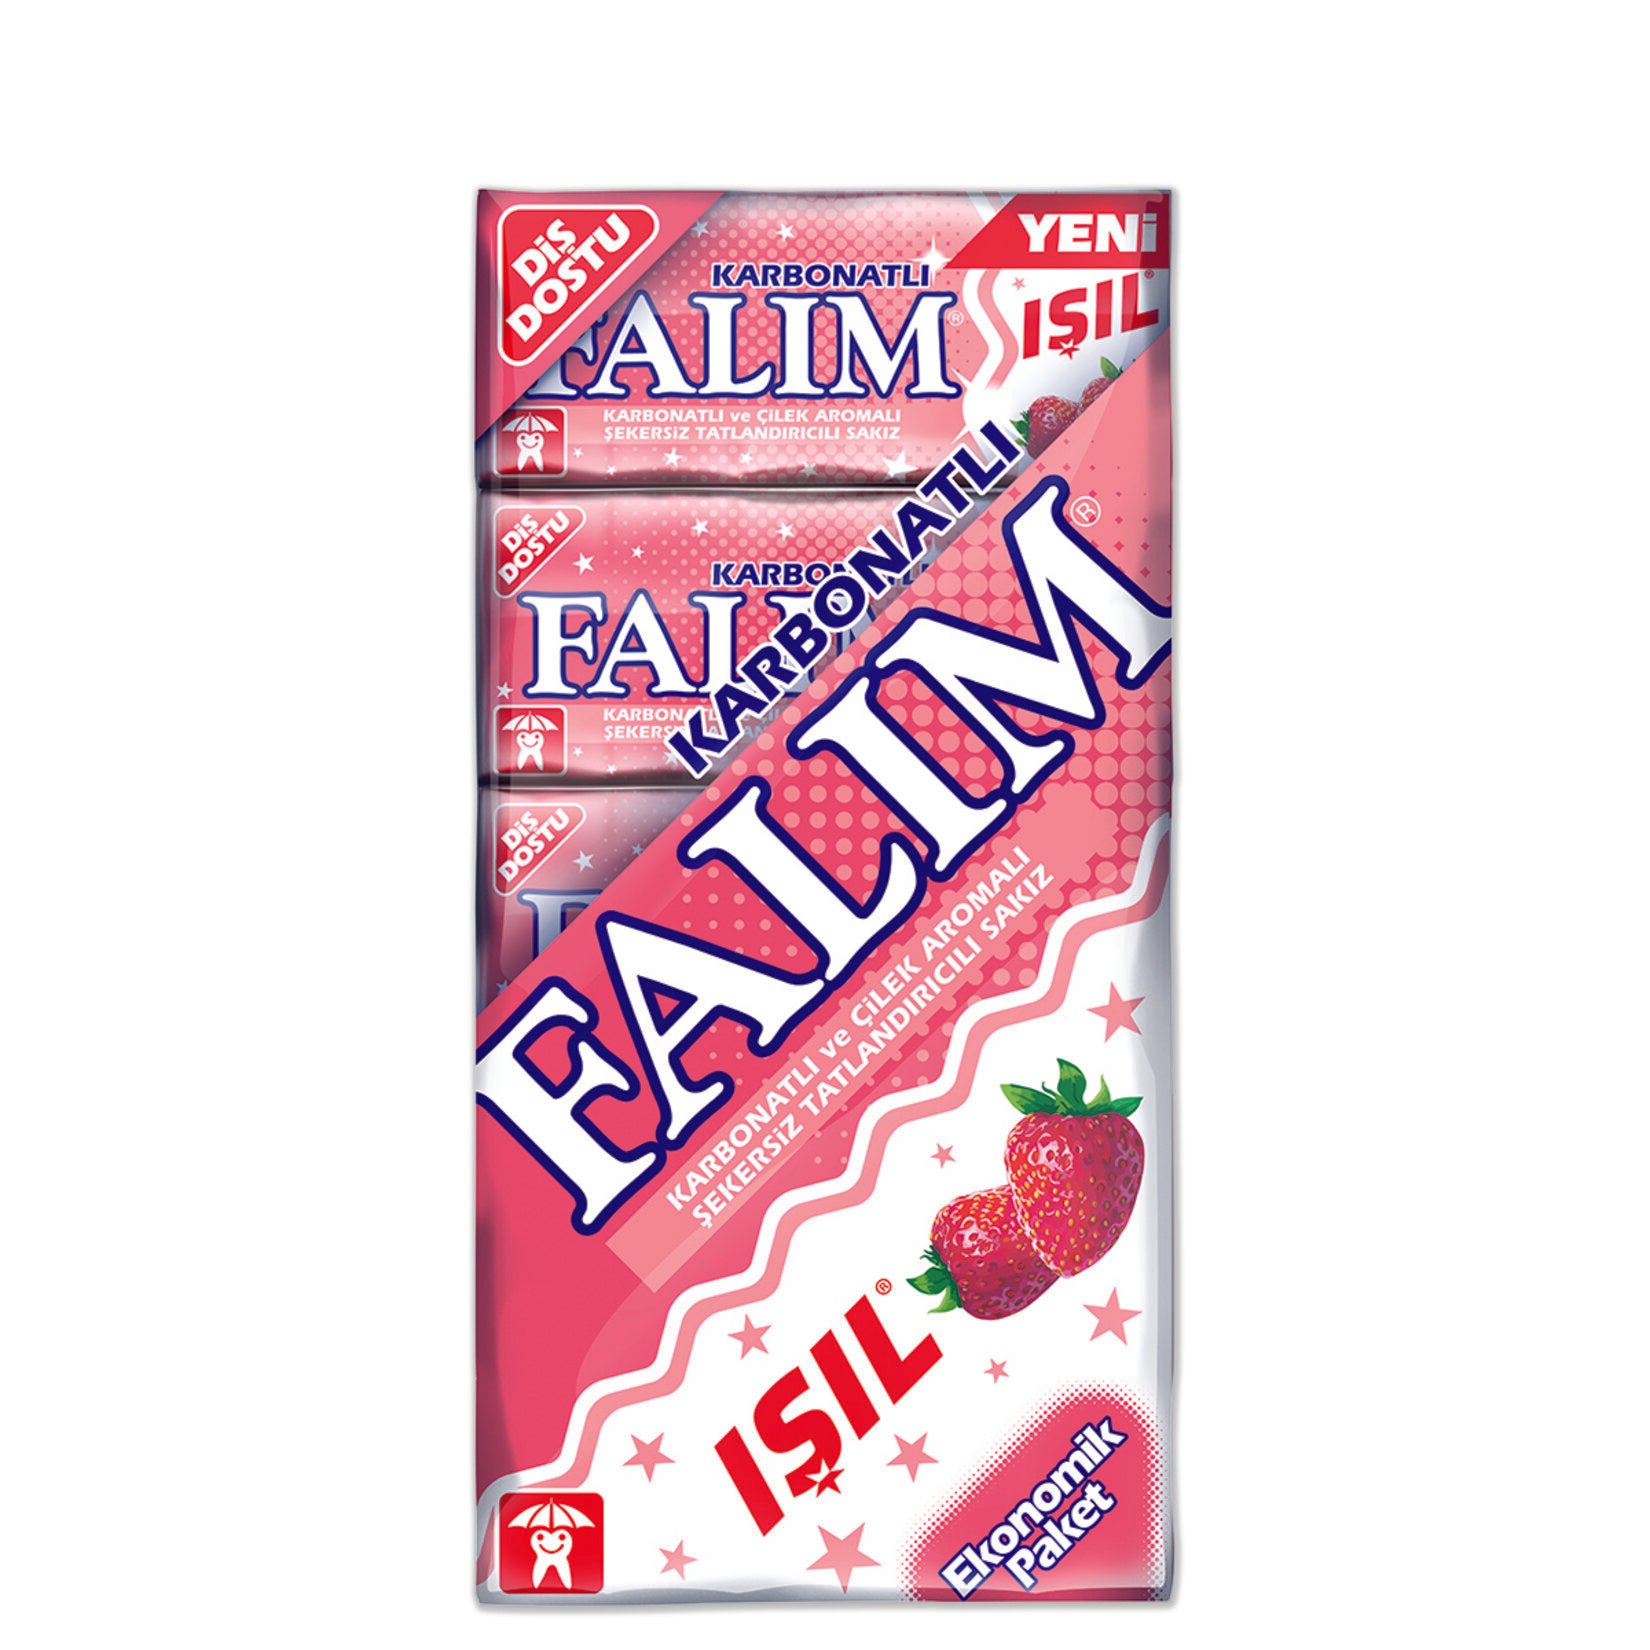 Falim Sugarfree Chewing Gum Mastic Gum Flavor Ind. Nigeria